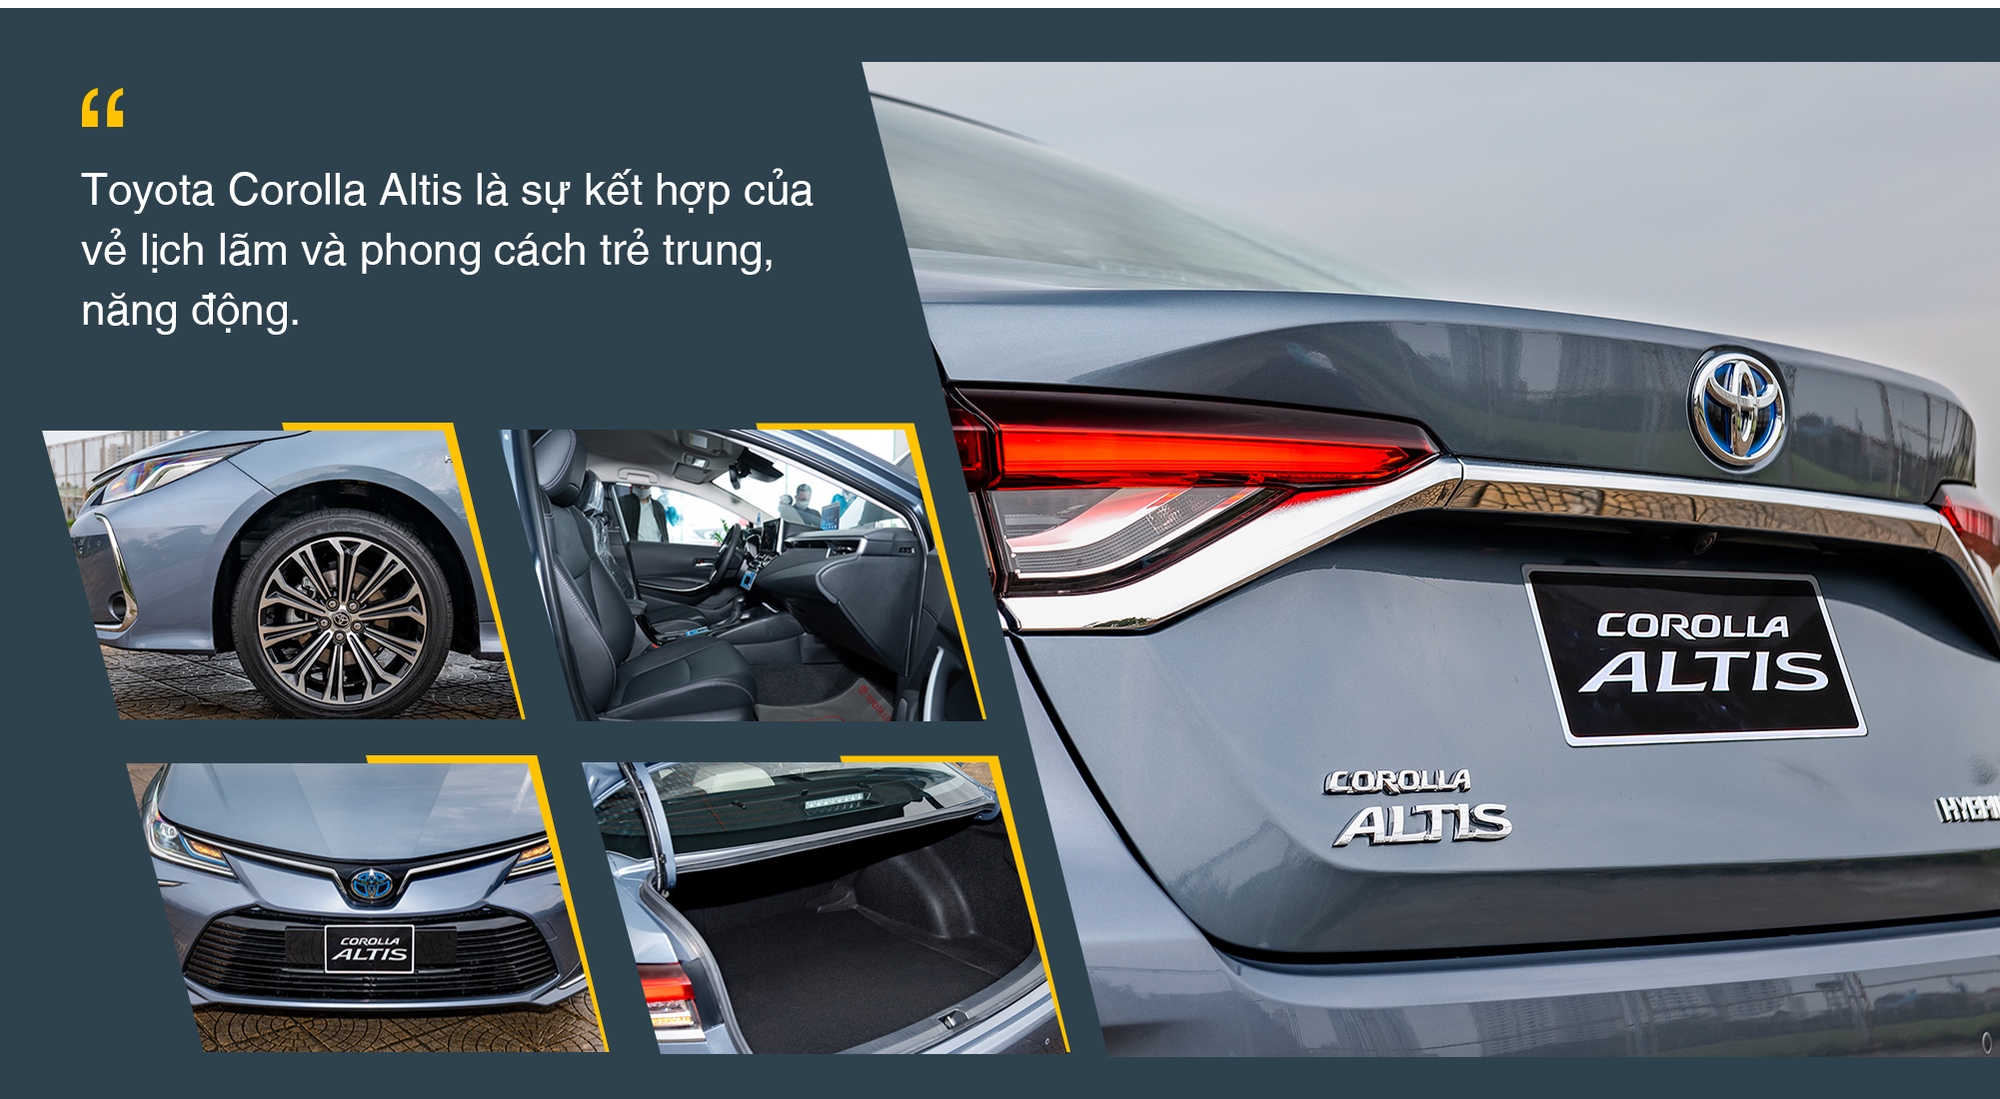 Toyota Corolla Altis – sedan đẳng cấp cho các doanh nhân trẻ thành đạt - Ảnh 4.